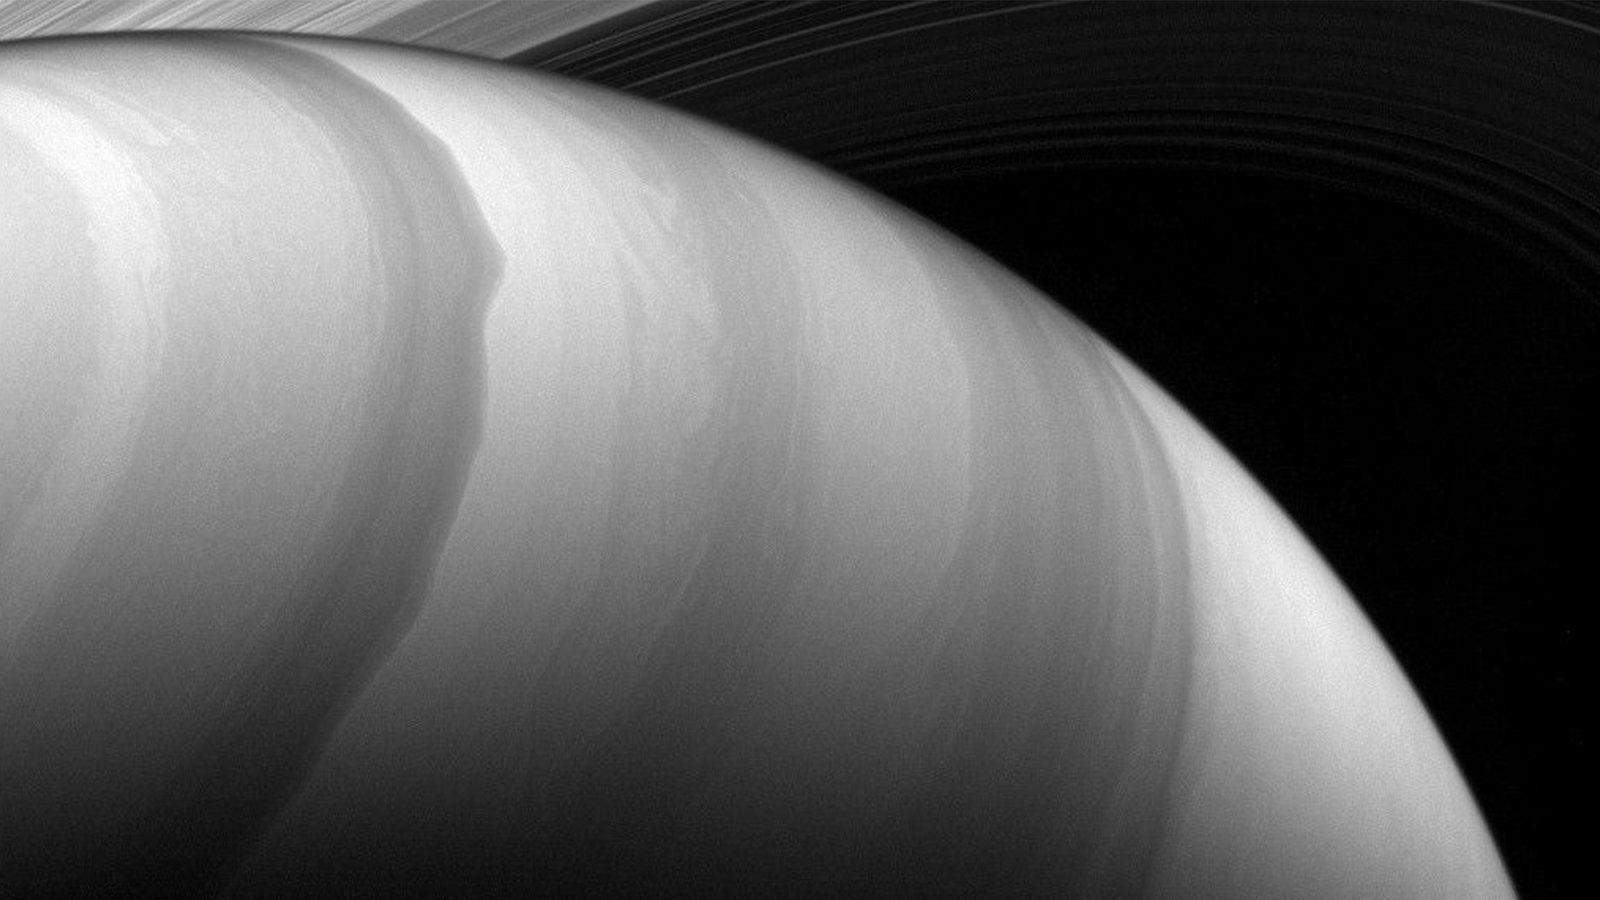 NASA infrared camera photo of Saturn